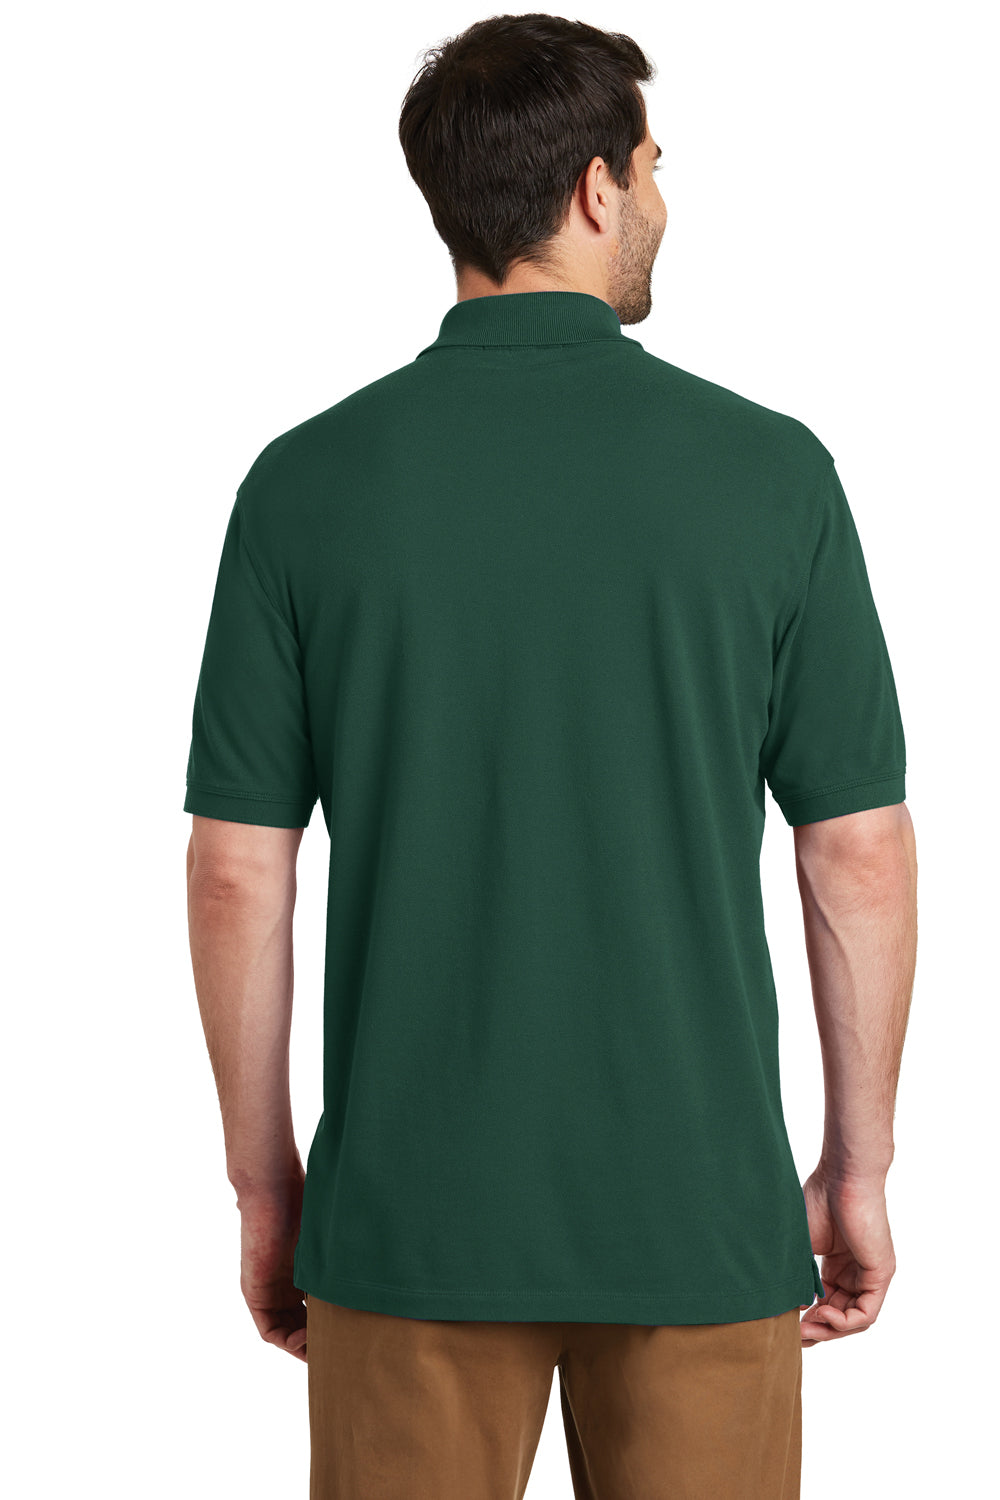 Port Authority K8000 Mens Wrinkle Resistant Short Sleeve Polo Shirt Glen Green Back